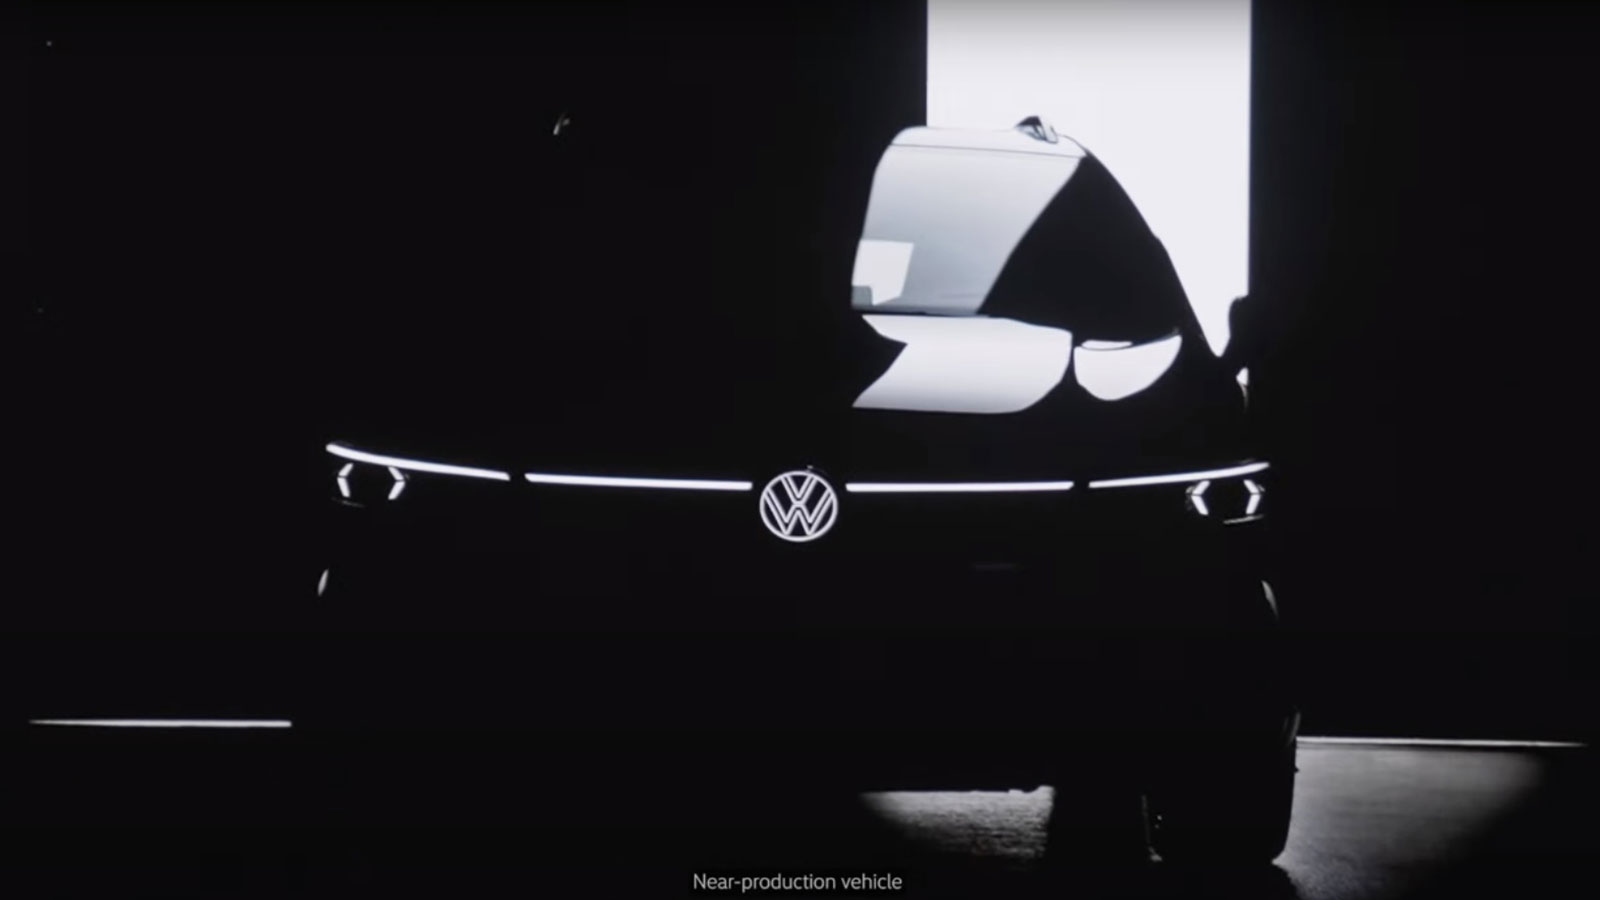 Αυτή είναι η πρώτη επίσημη teaser εικόνα της Volkswagen για το ανανεωμένο VW Golf.

